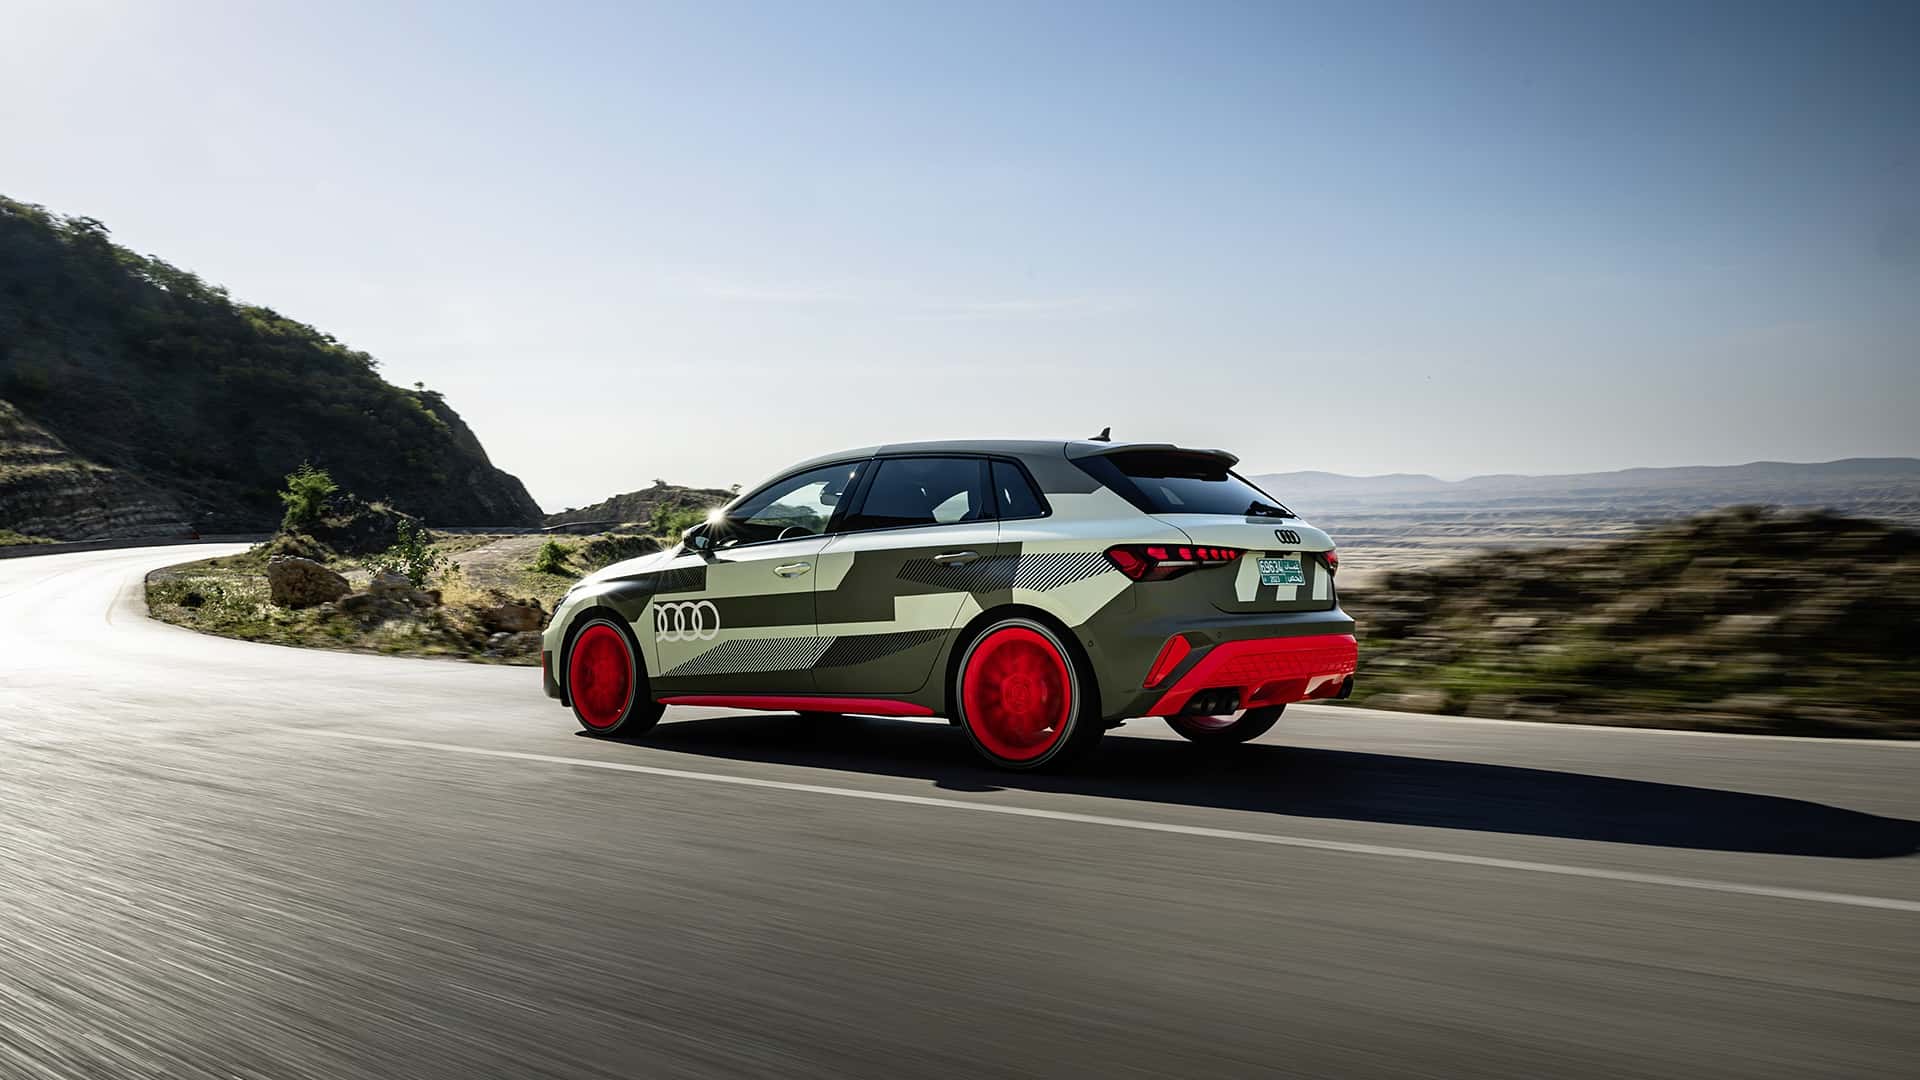 اودي تكشف أول صور لسيارة S3 سيدان فيس ليفت الجديدة بمحرك أقوى وخارجية أكثر رشاقة 22